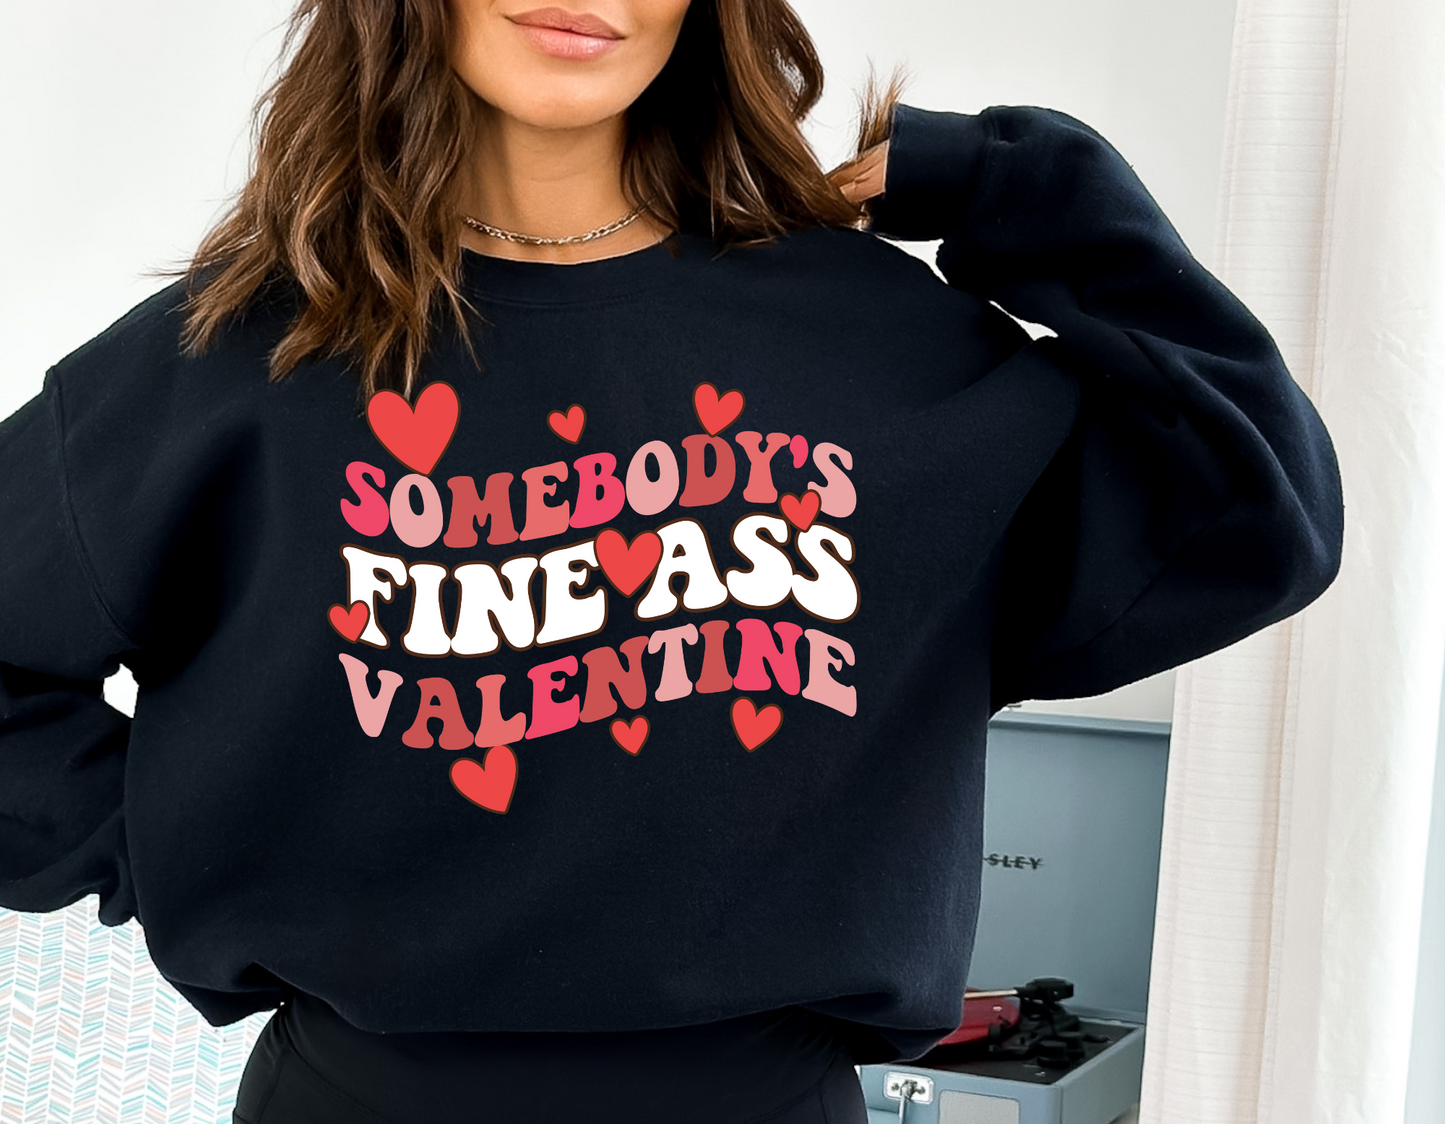 Someone's Fine Ass Valentine Crew Sweatshirt